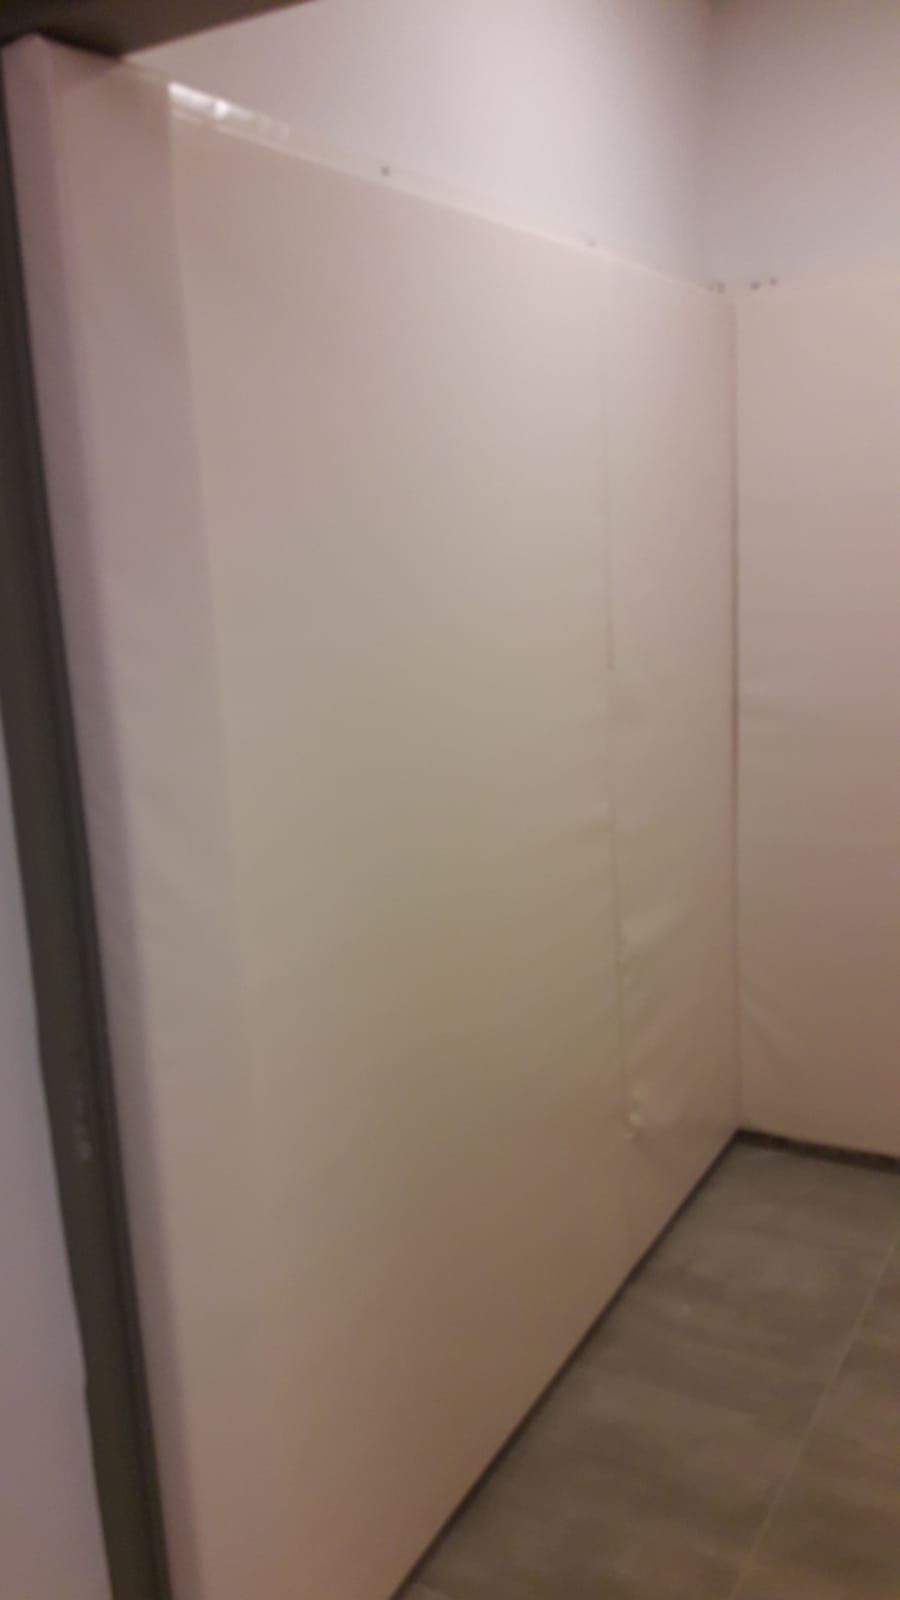 ריפוד הגנה לקיר בהתקנה קבועה לחדר סנוזלן - תמונה מספר 2